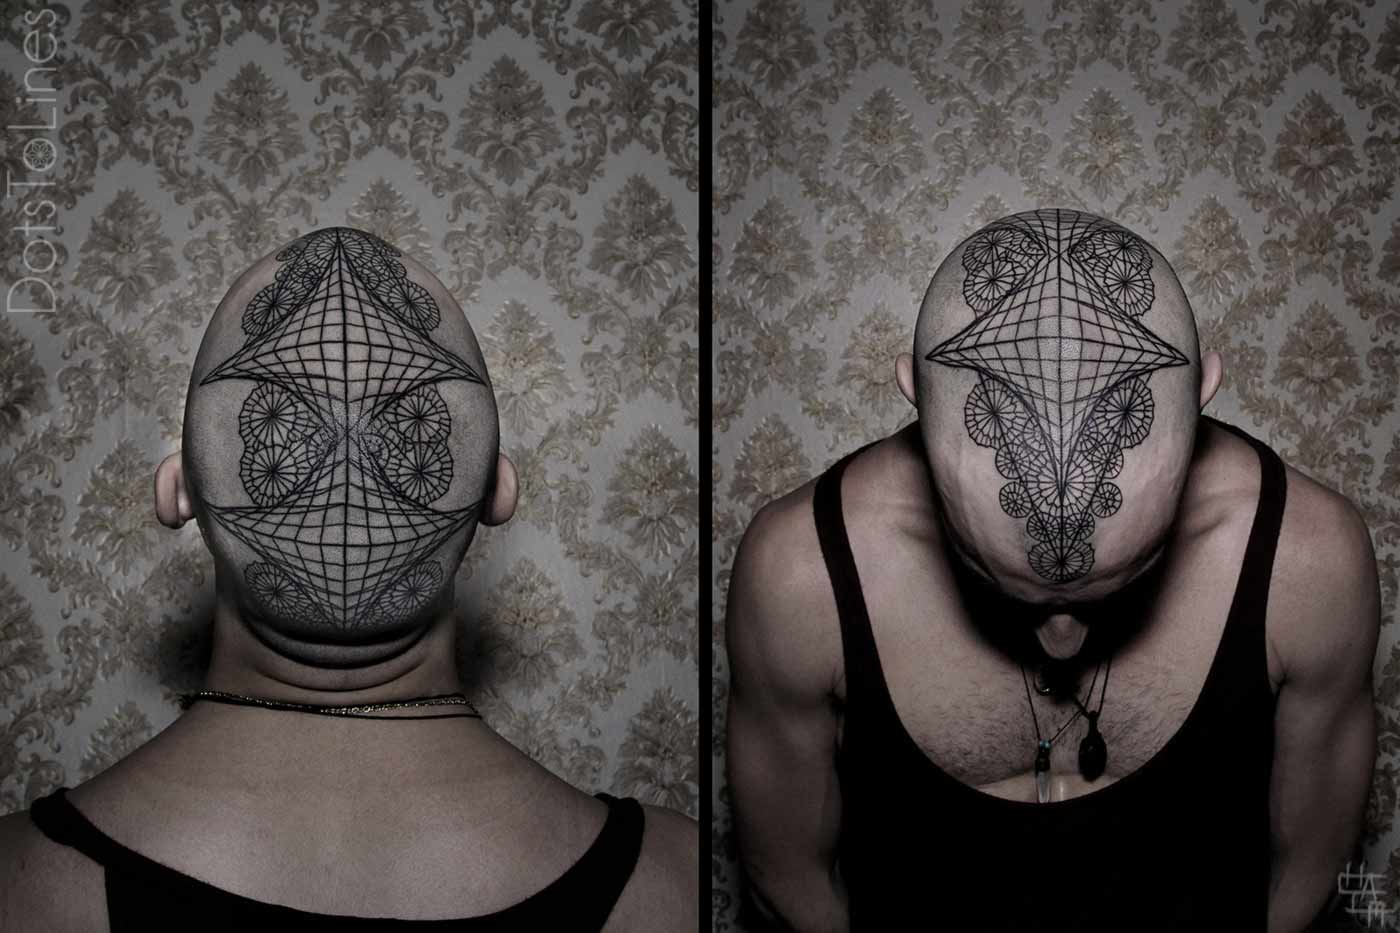 tattoos-by-chaim-machlev.jpg